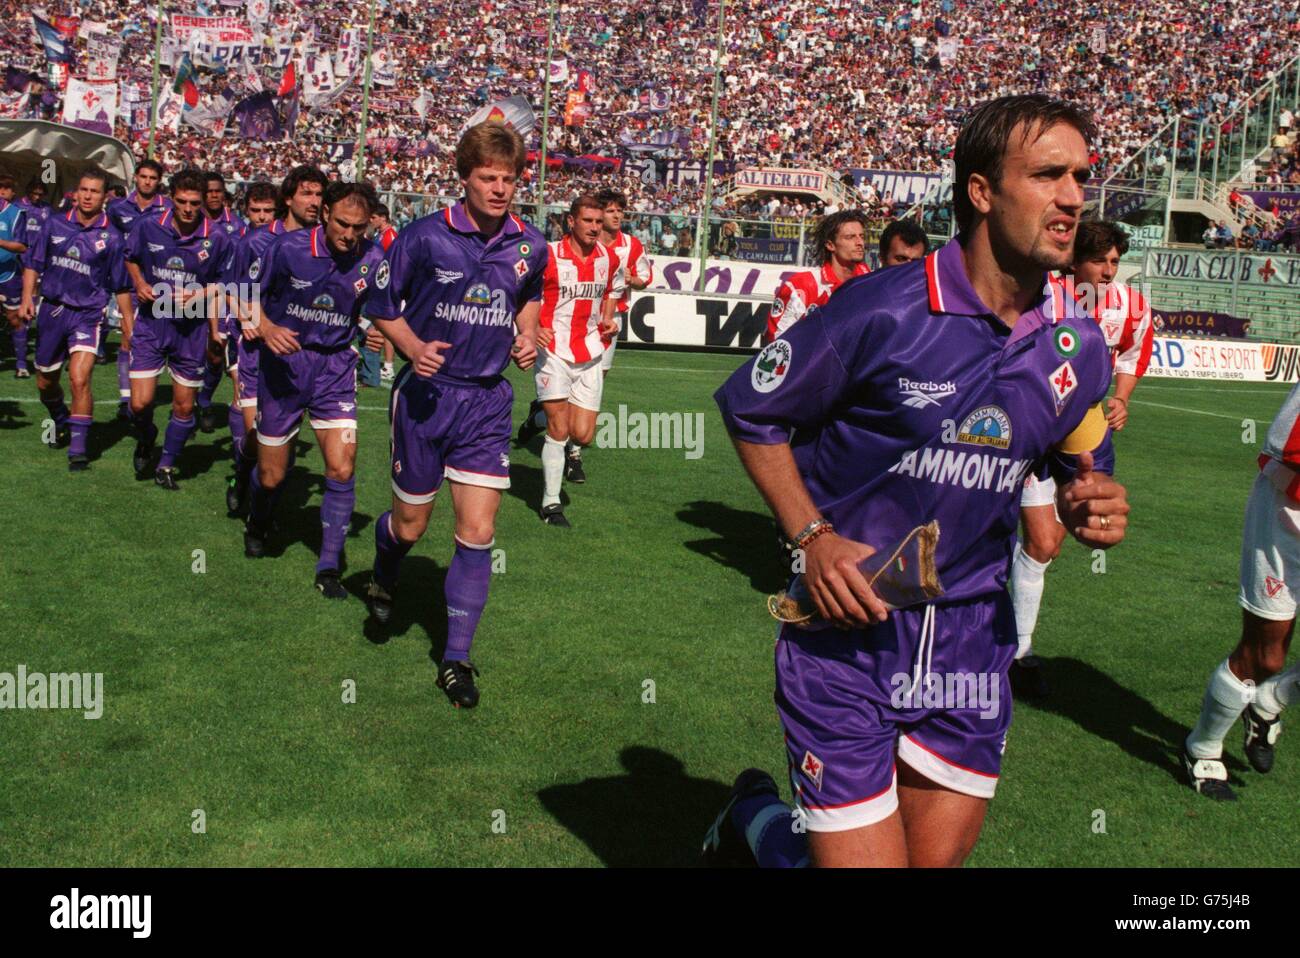 Soccer - Fiorentina v Vicenza. Gabriel Batistuta leads out Fiorentina Stock Photo